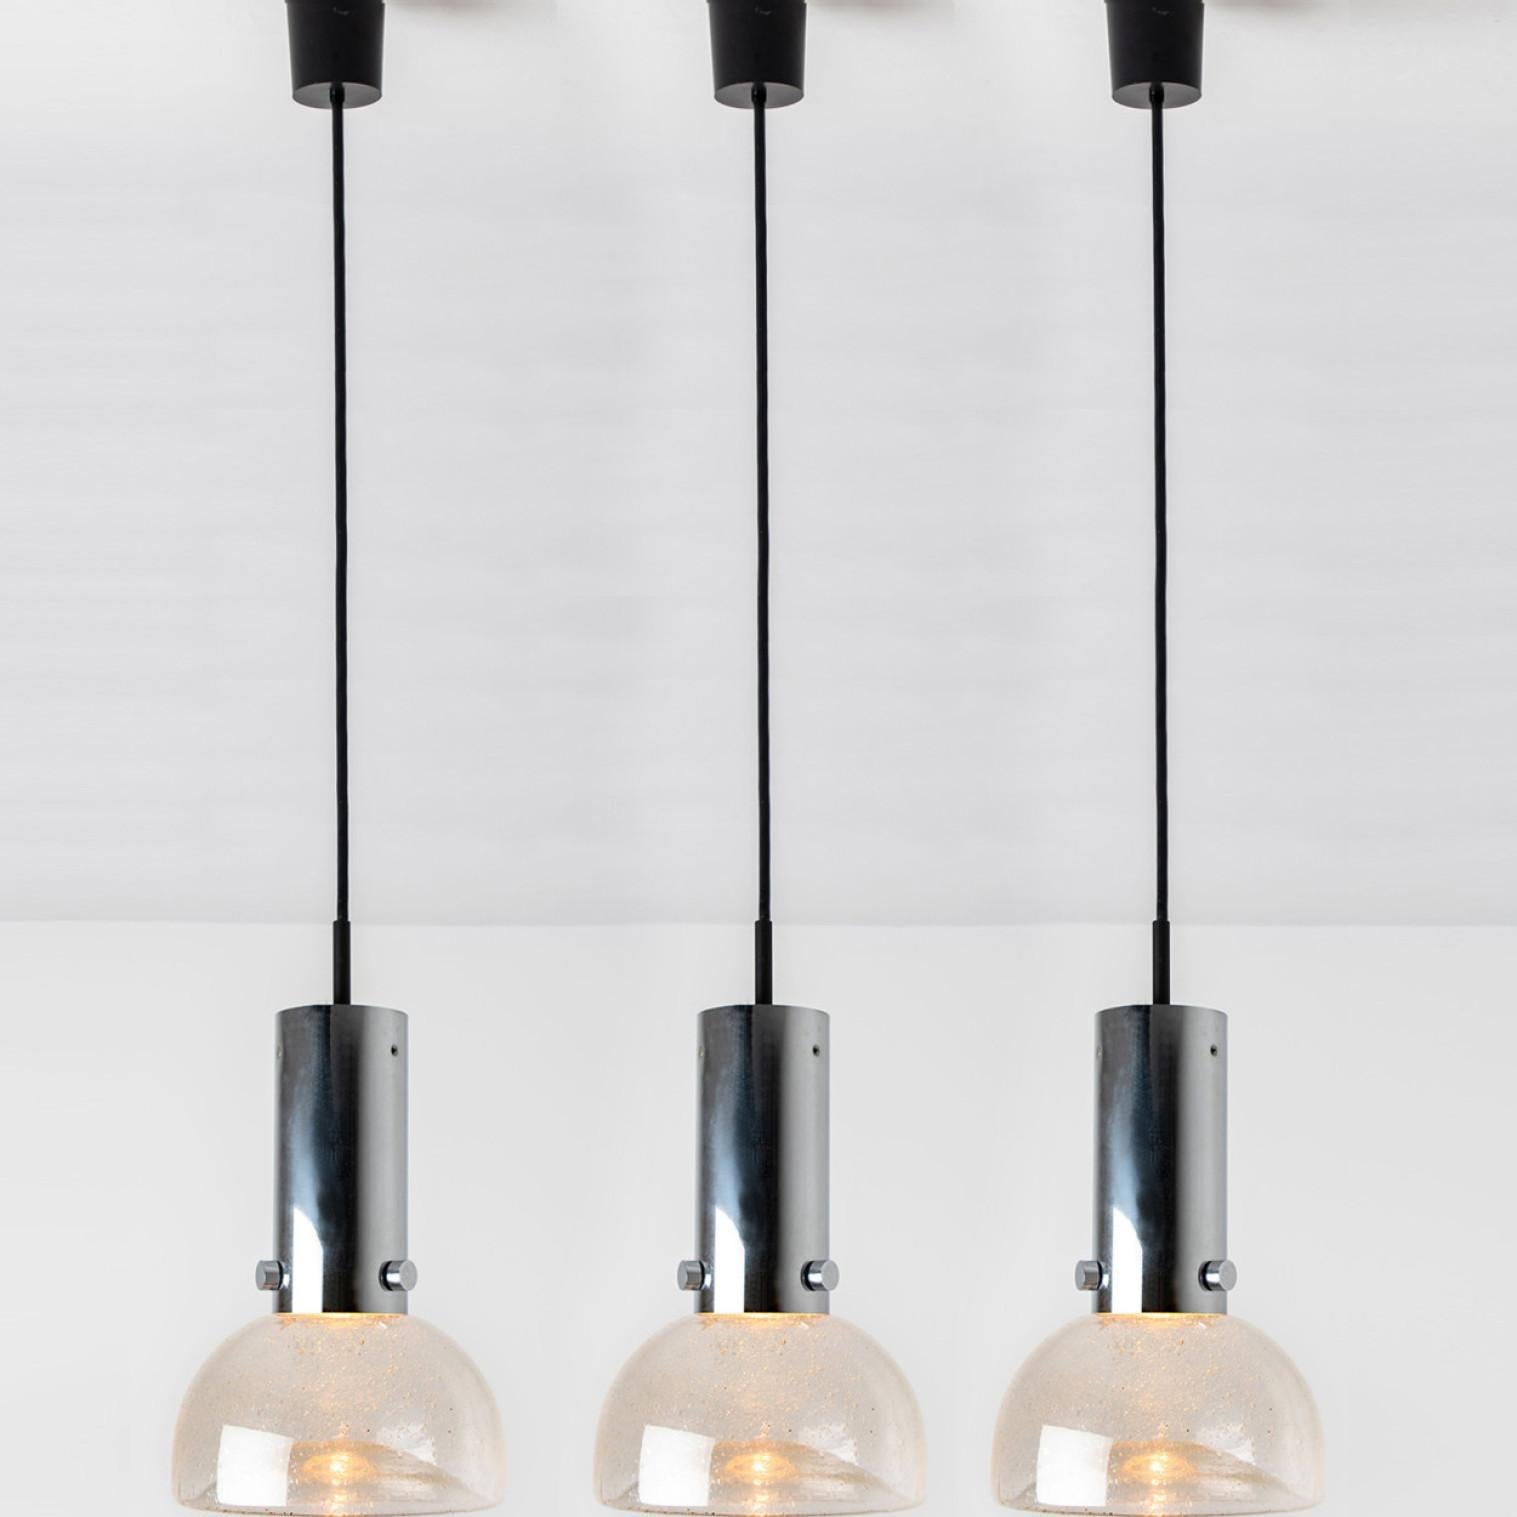 L'une des trois lampes tubulaires originales des années 1970 produites par Staff Leuchten, Allemagne.
Luminaires en verre de haute qualité avec abat-jour soufflé à la main sur une suspension chromée. Pièces originales.
Cet article est en excellent